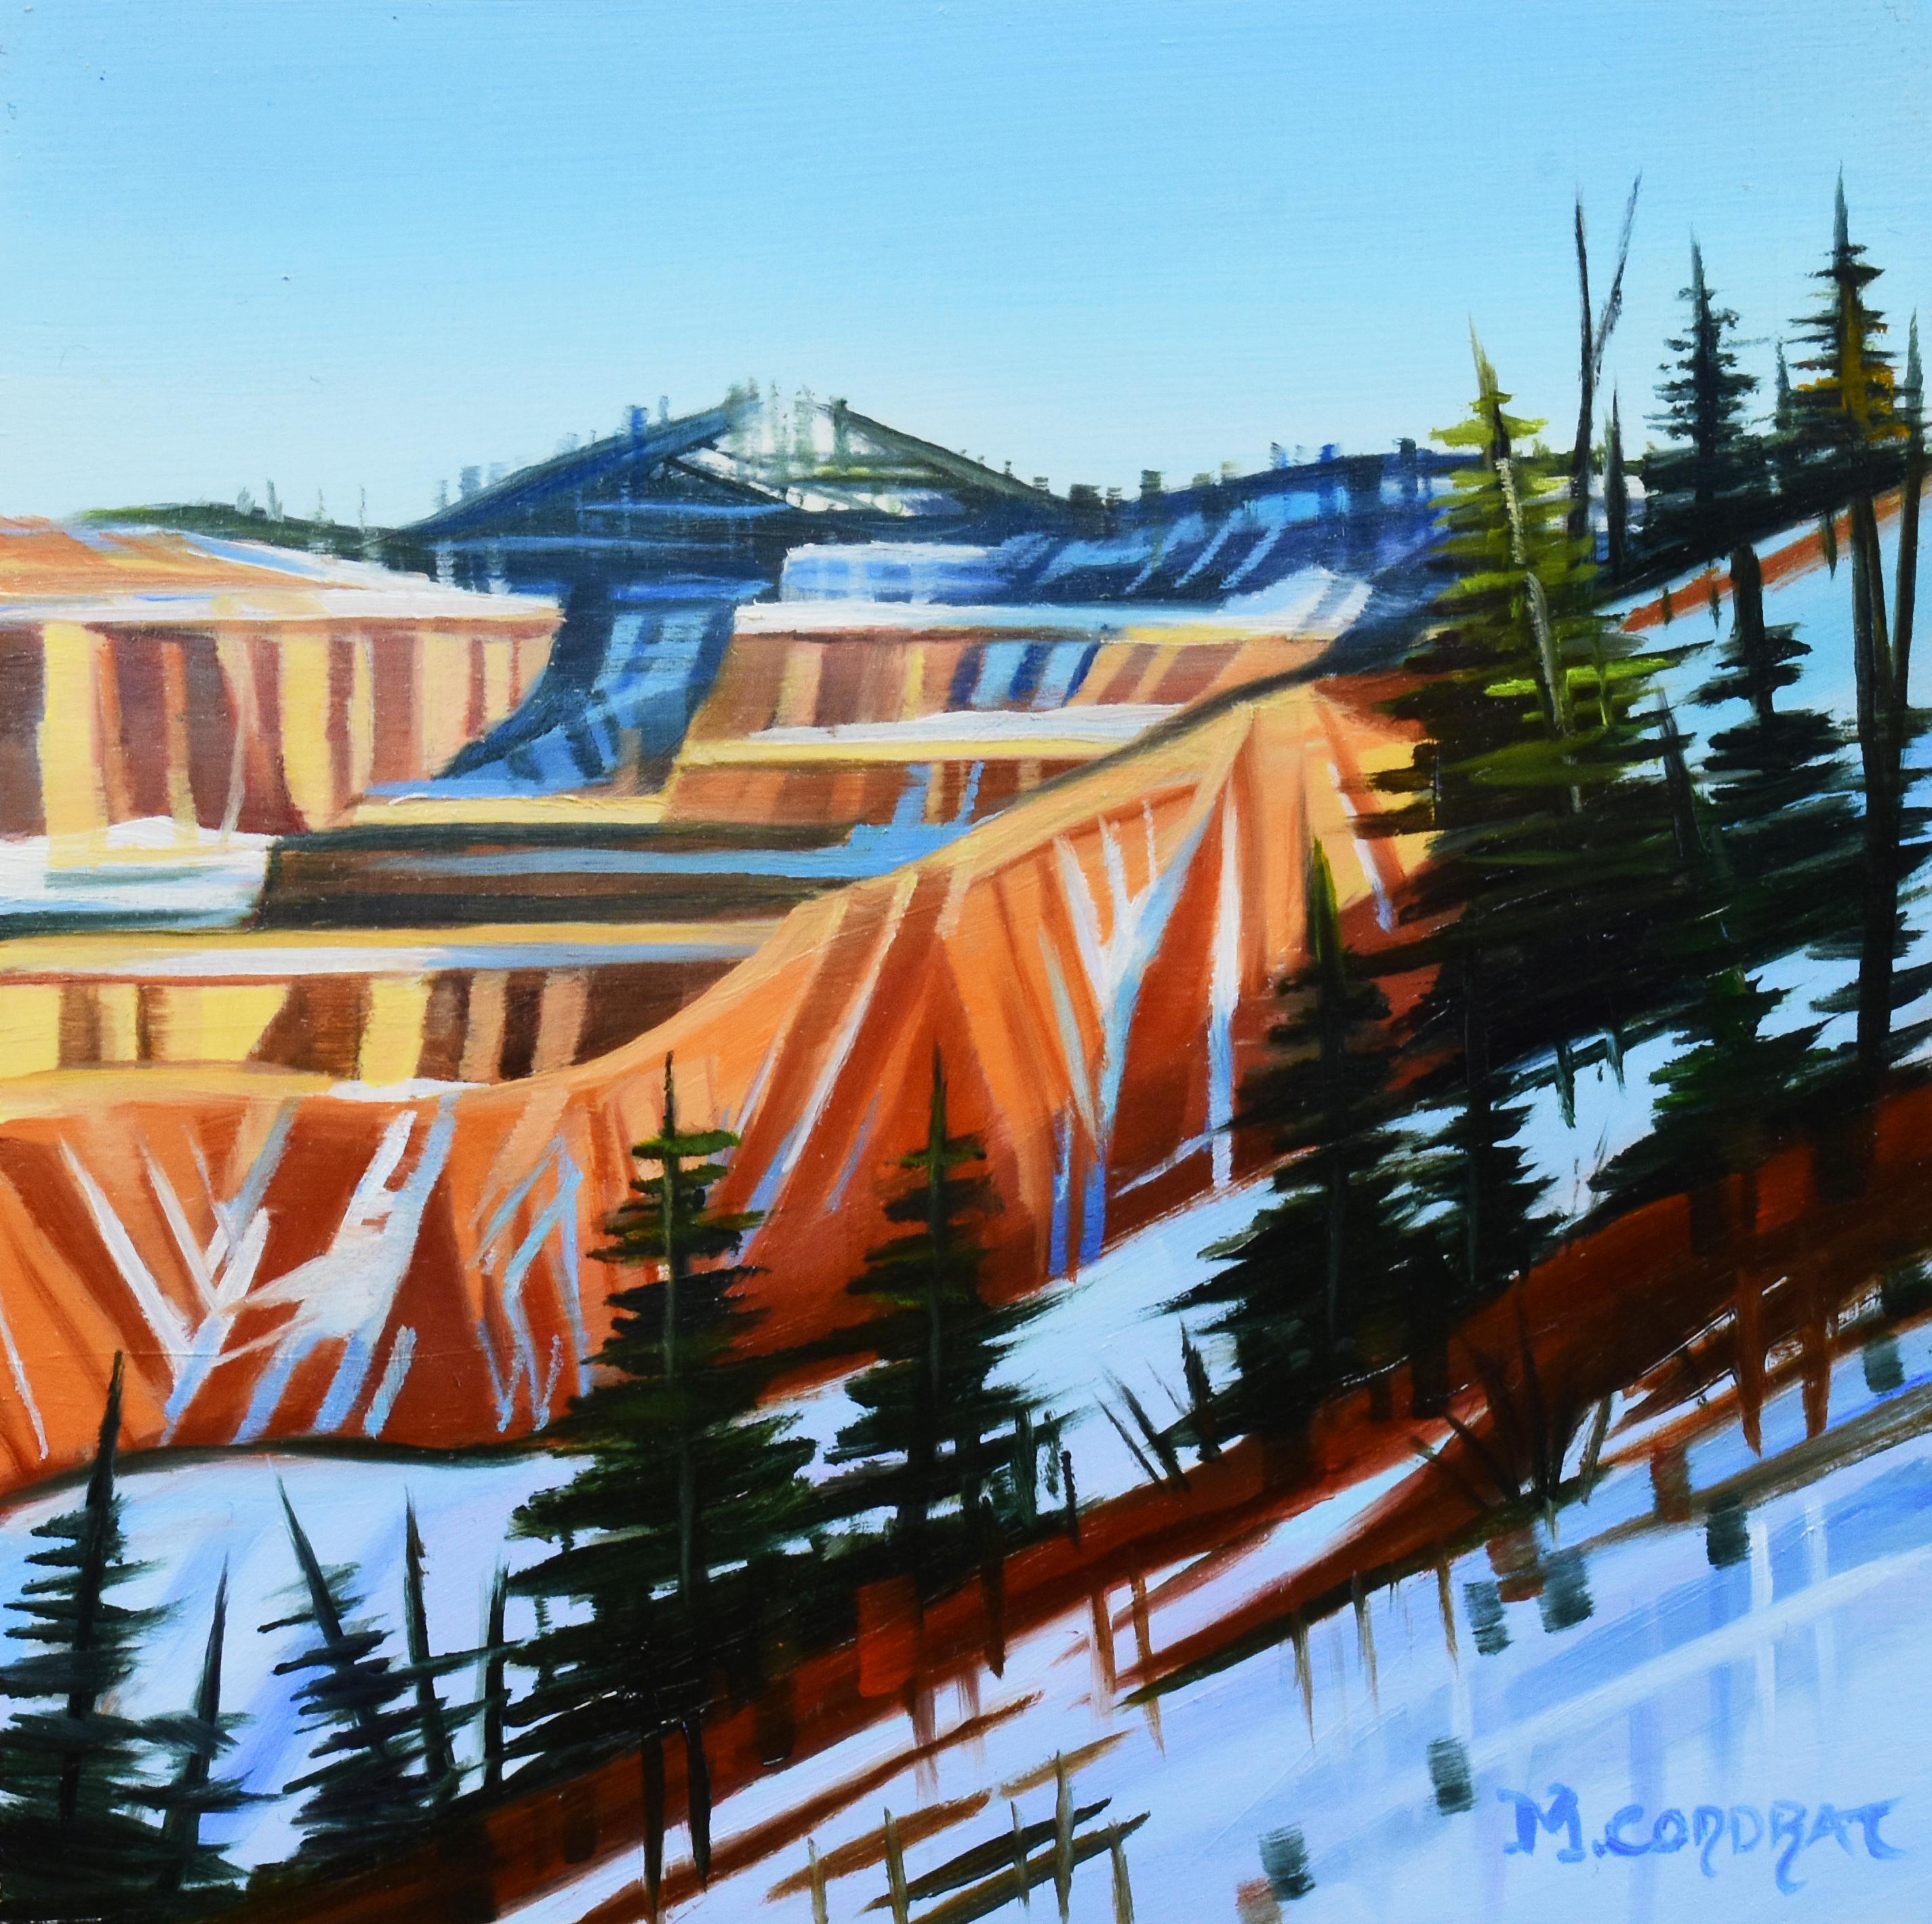 Michelle Condrat Landscape Painting - "Winter Upon the Canyon" - Winter Landscape Oil painting